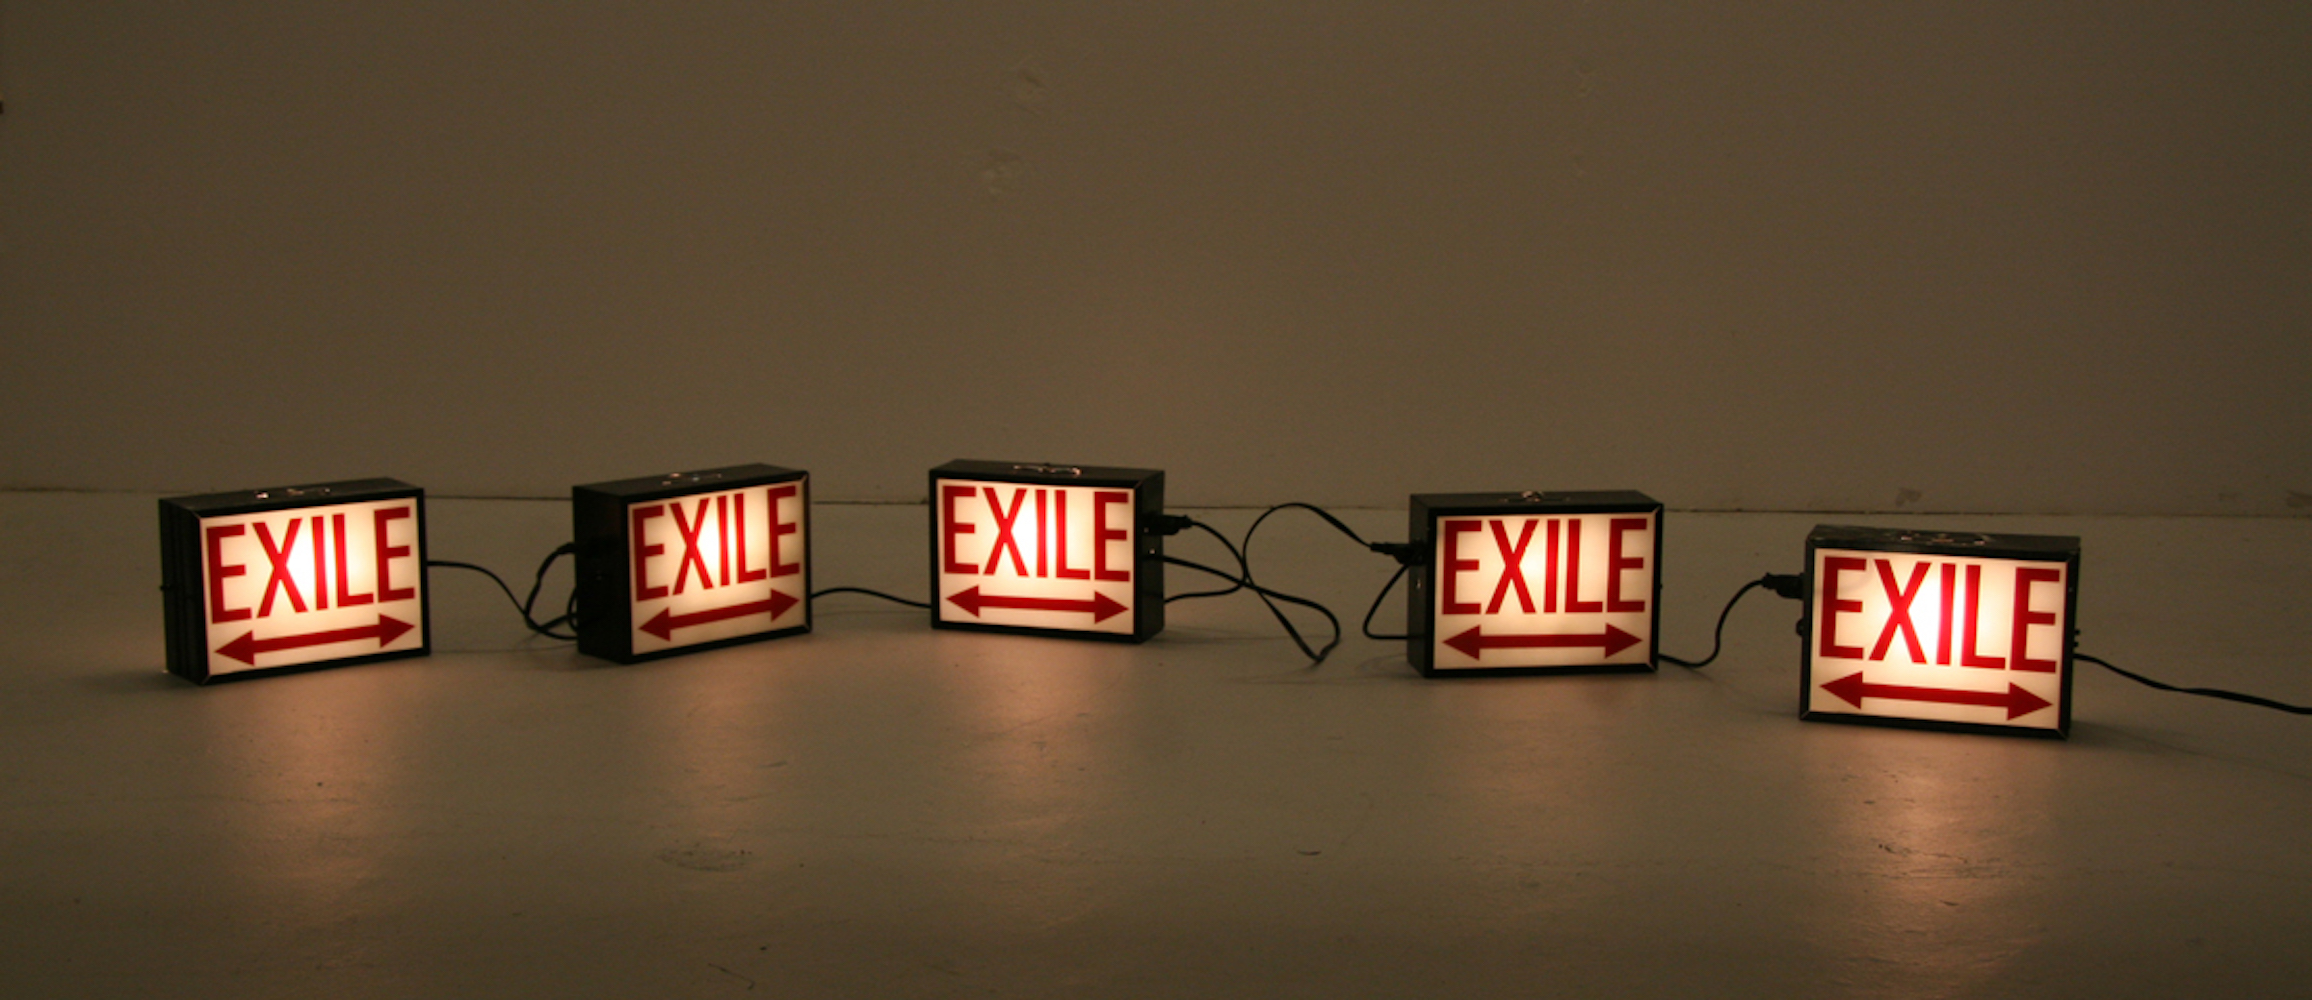 exile.jpg